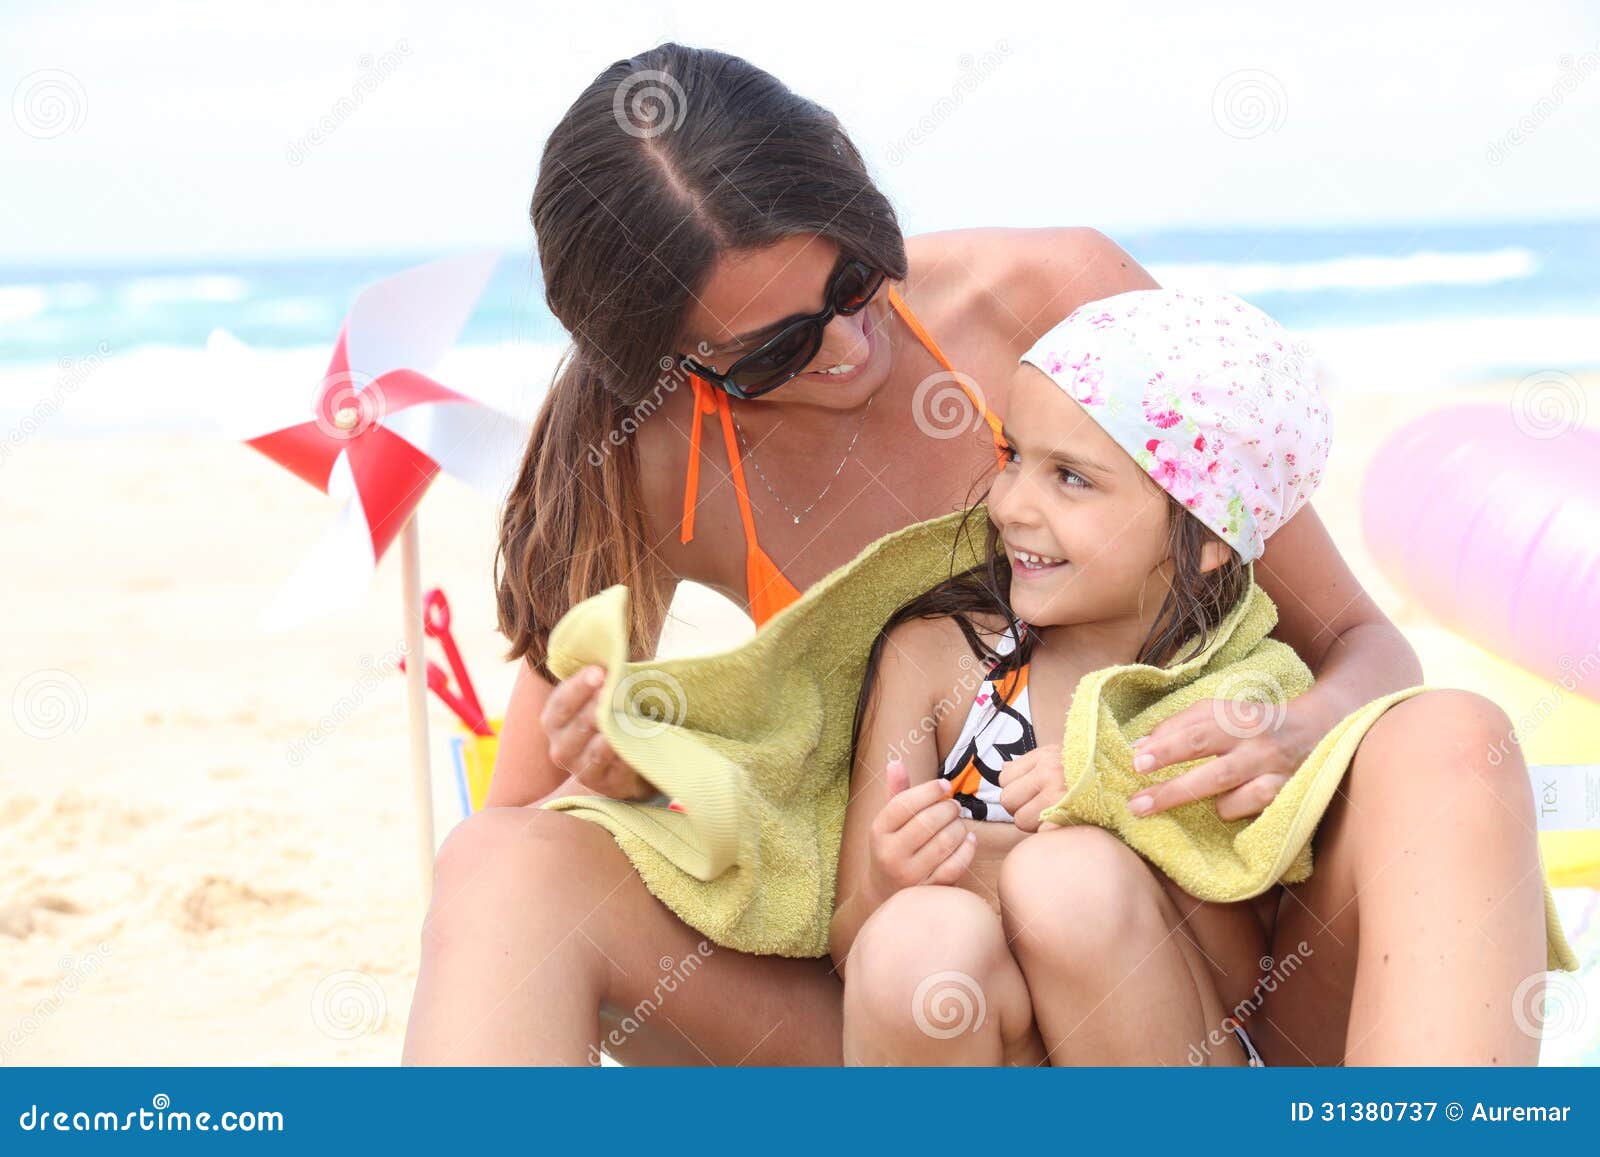 Дочка папе в трусы. Дочь на пляже. Мама с дочкой загорают. Мама сдоякой на пляже. Ама с дочерьми на пляже.